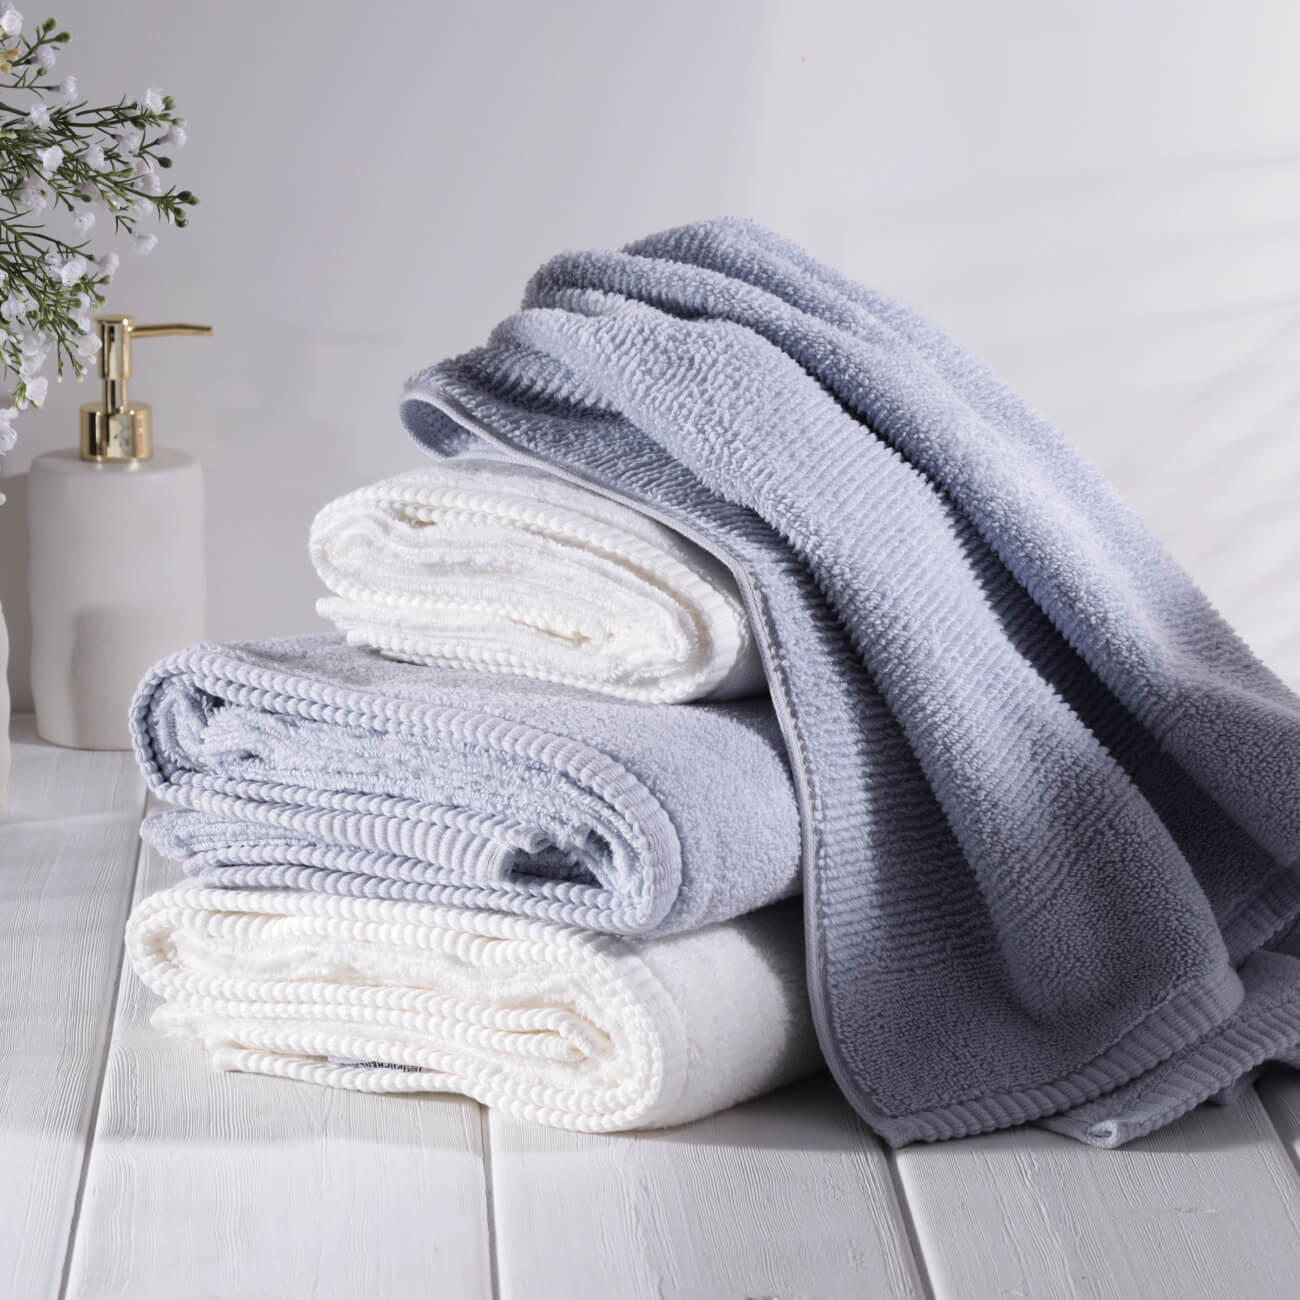 Towel set, 50x90 / 70x140 cm, 4 pcs, cotton, white / blue, Terry cotton изображение № 1